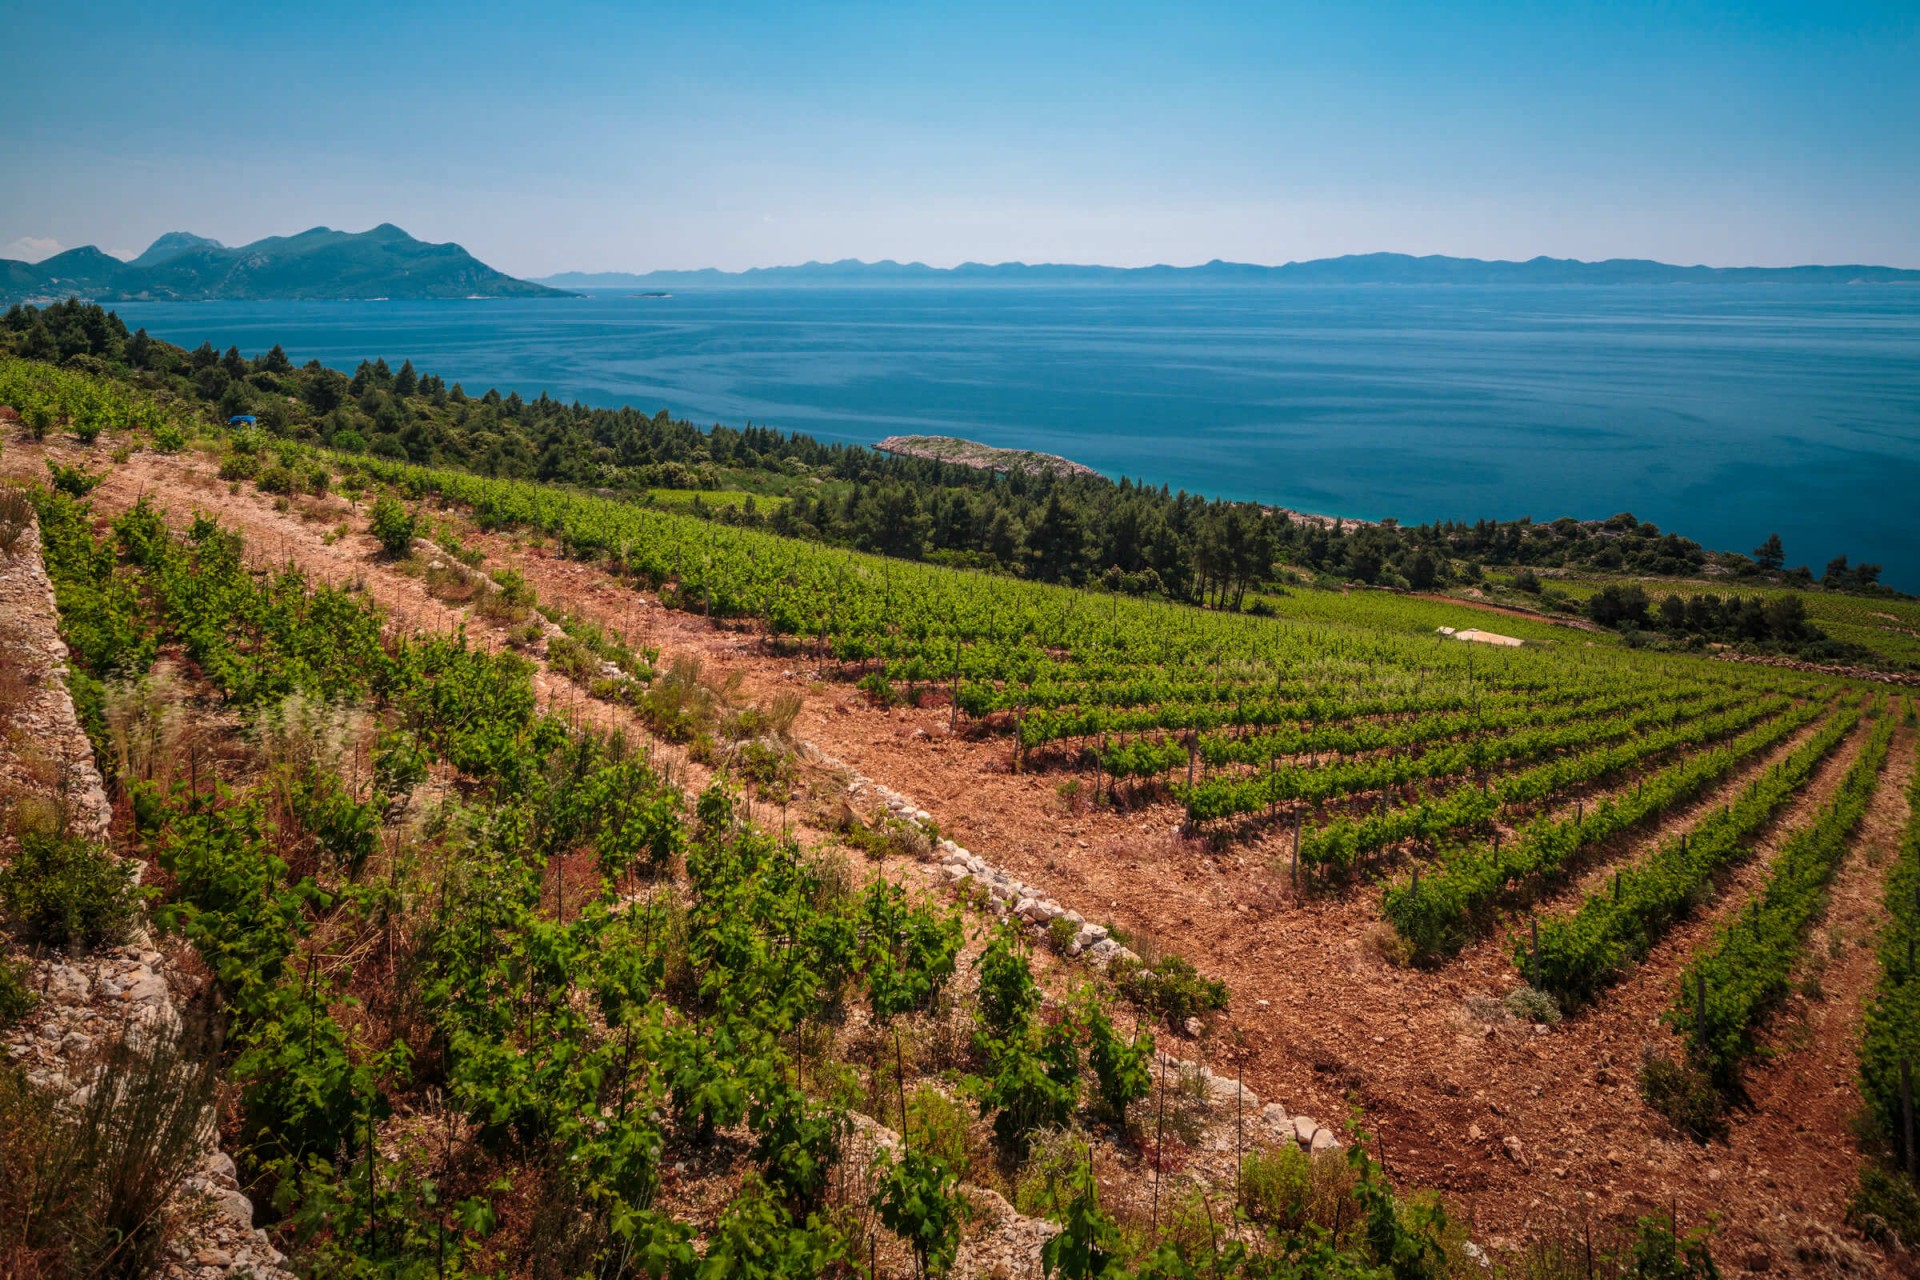 3 Prekrasne Vinske Ceste u Hrvatskoj